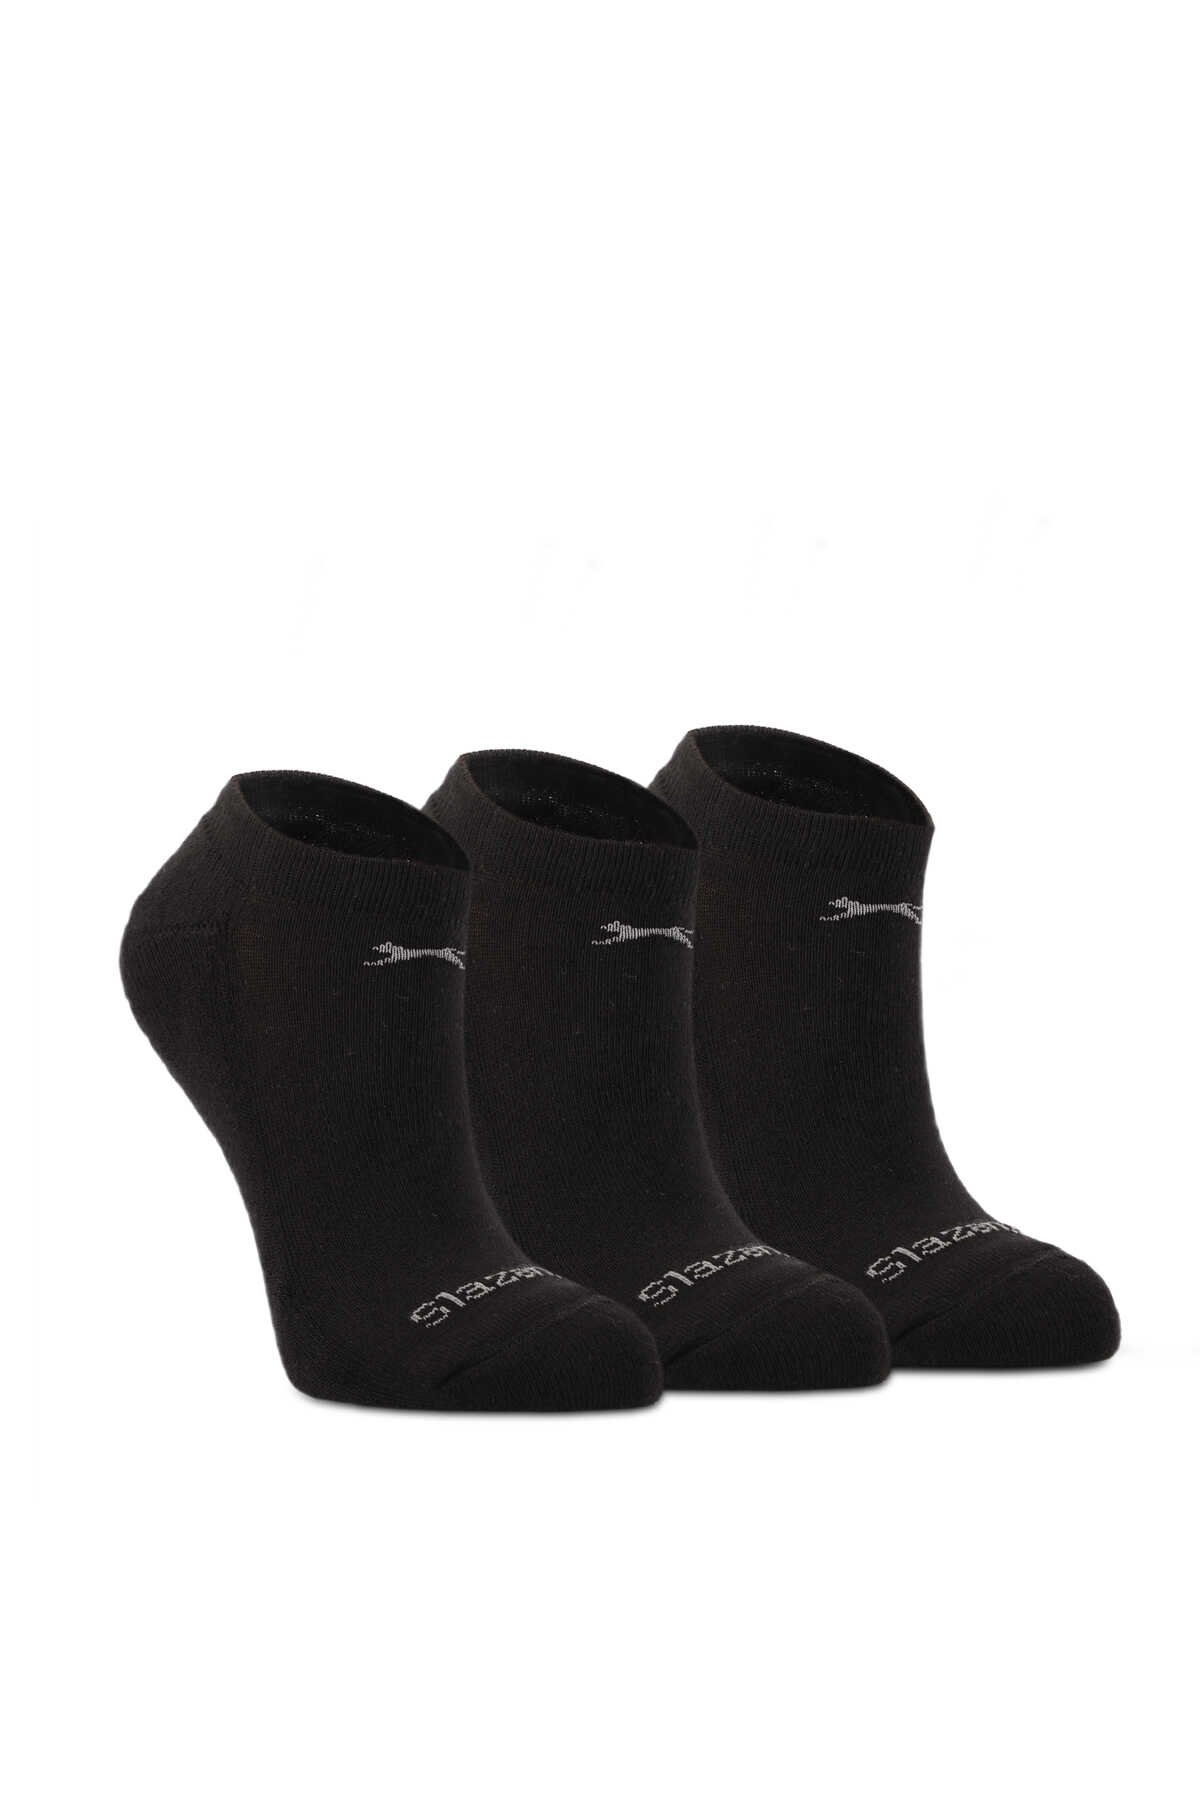 Slazenger - Slazenger JAEL Kadın Çorap Siyah